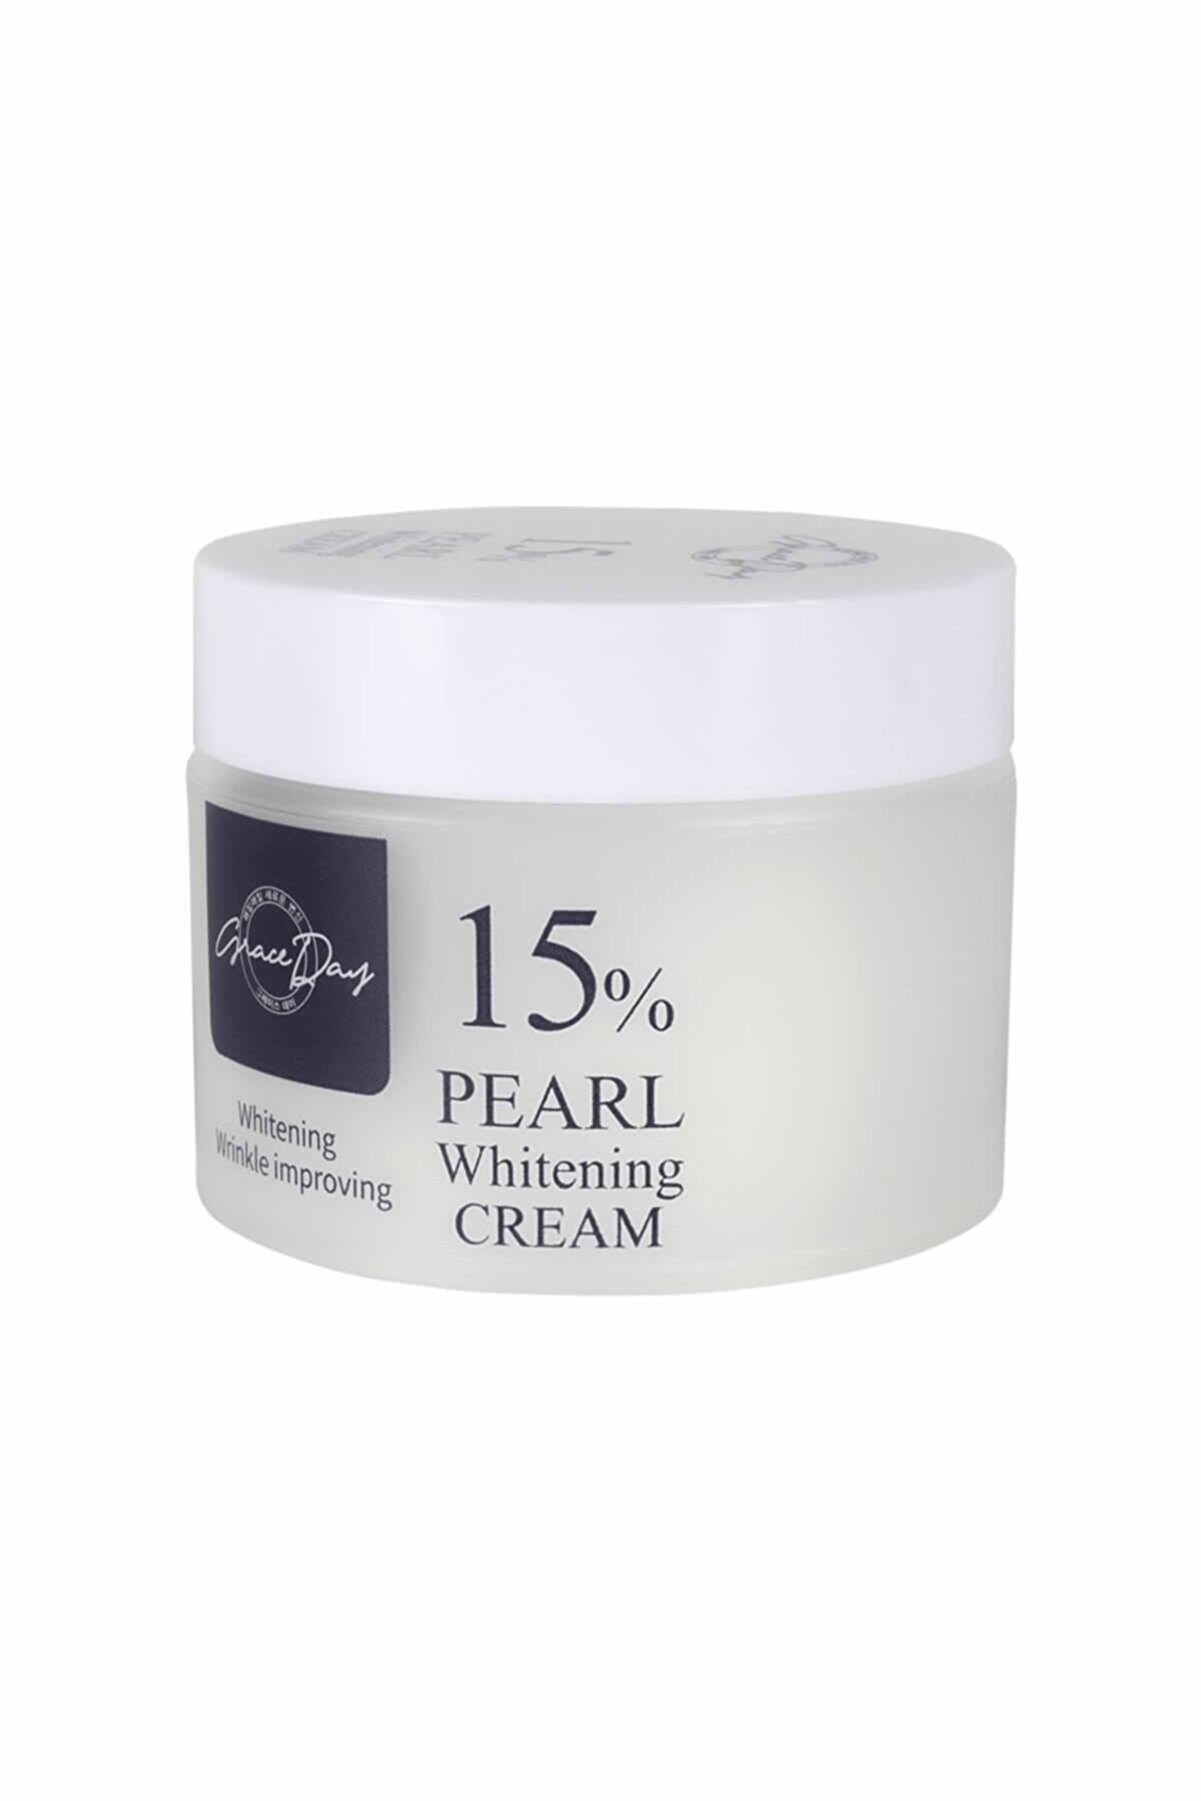 Grace Day %15 Inci Özü Ile Aydınlatıcı Ve Nemlendirici Krem Pearl 15% Whitening Cream